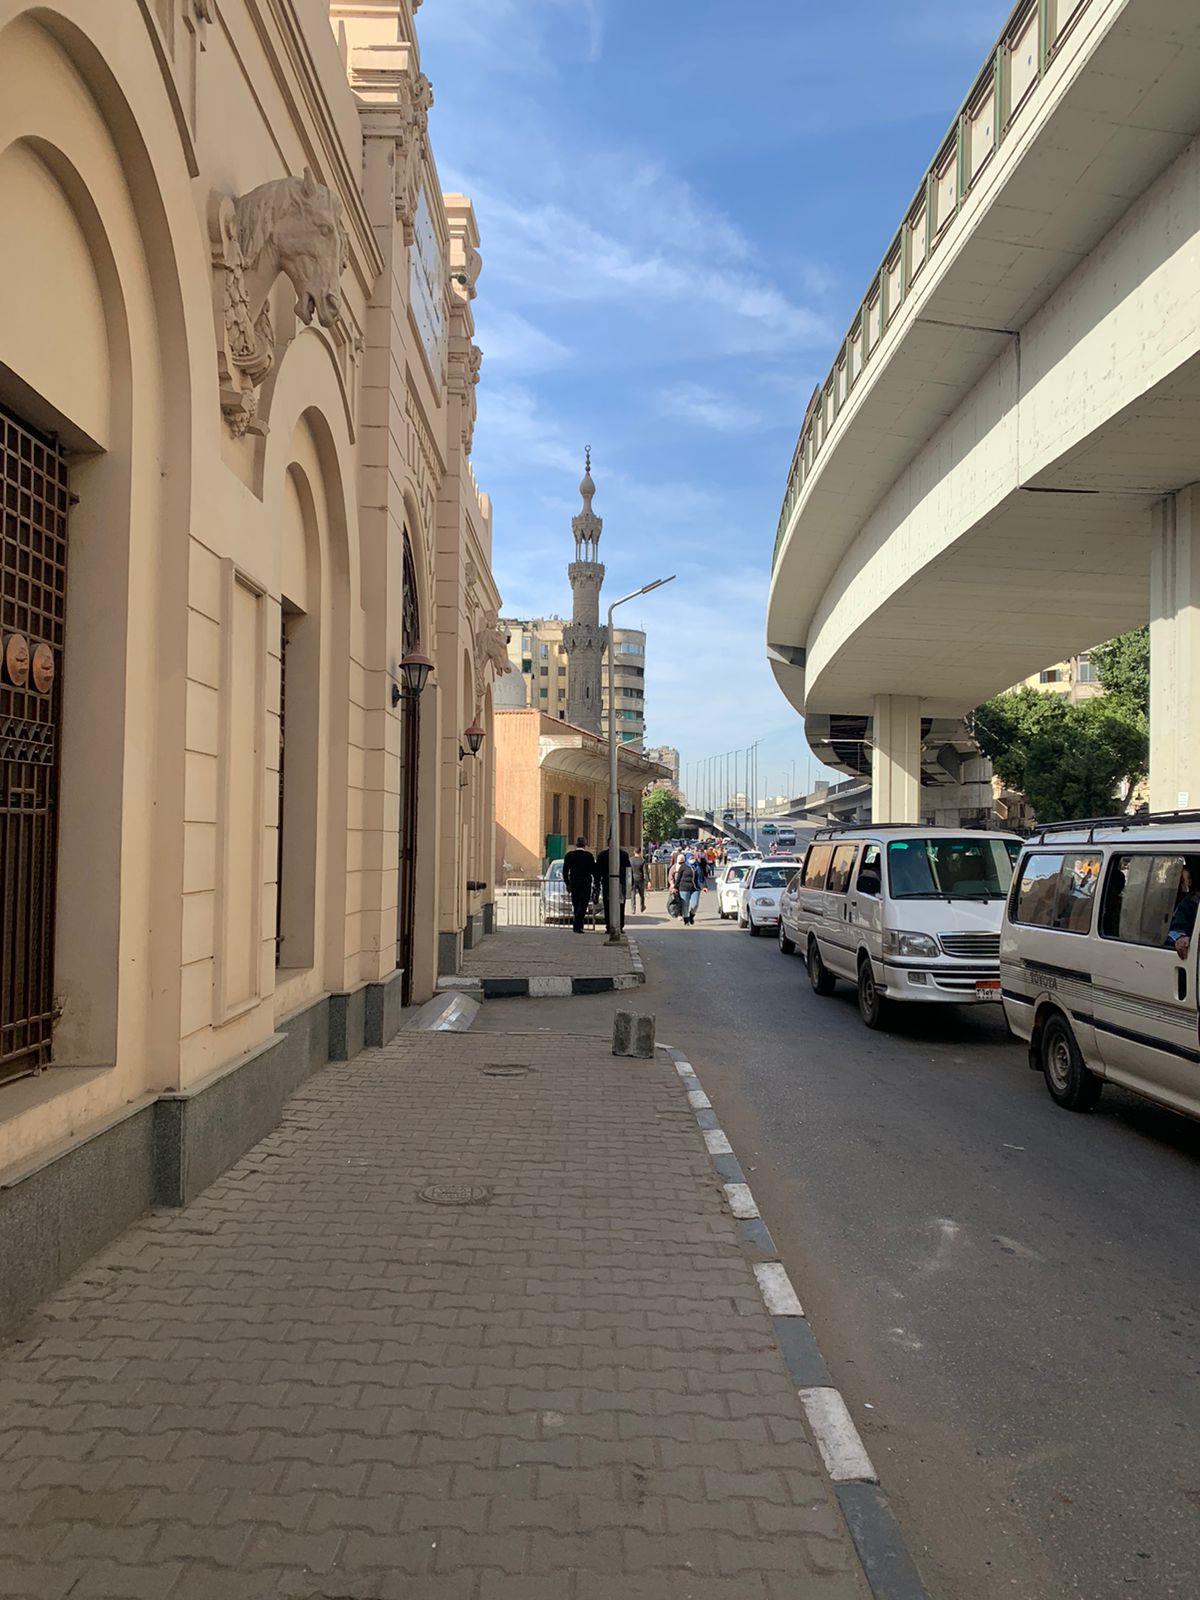 السلطان أبو العلا مسجد صاحب الكرامات في حي بولاق